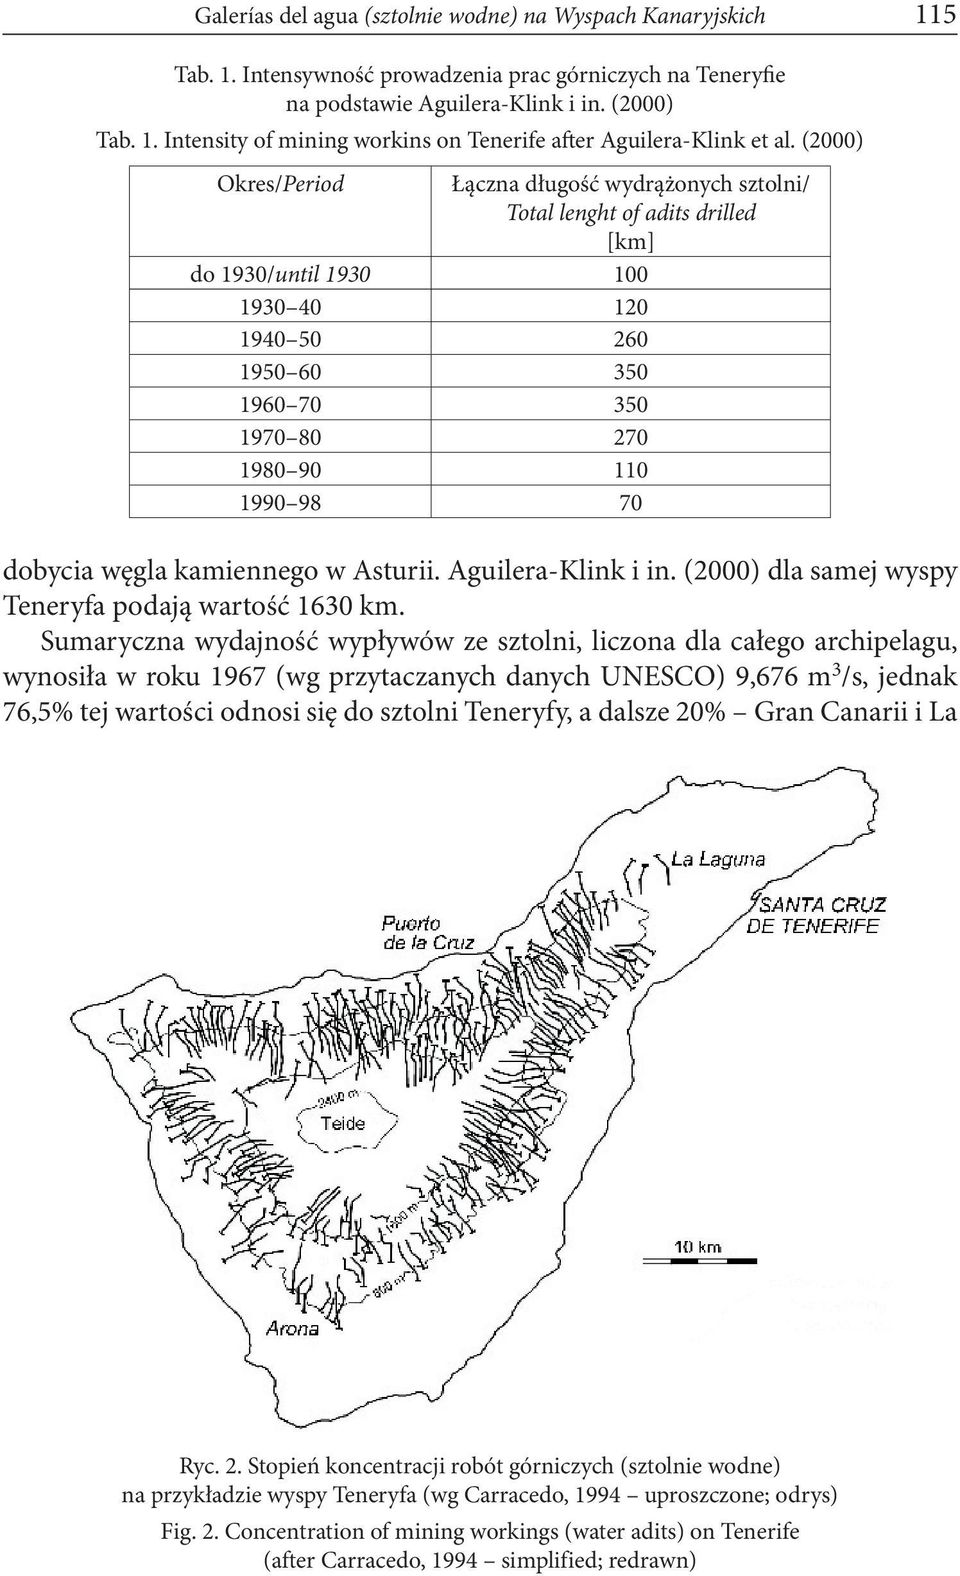 dobycia węgla kamiennego w Asturii. Aguilera-Klink i in. (2000) dla samej wyspy Teneryfa podają wartość 1630 km.